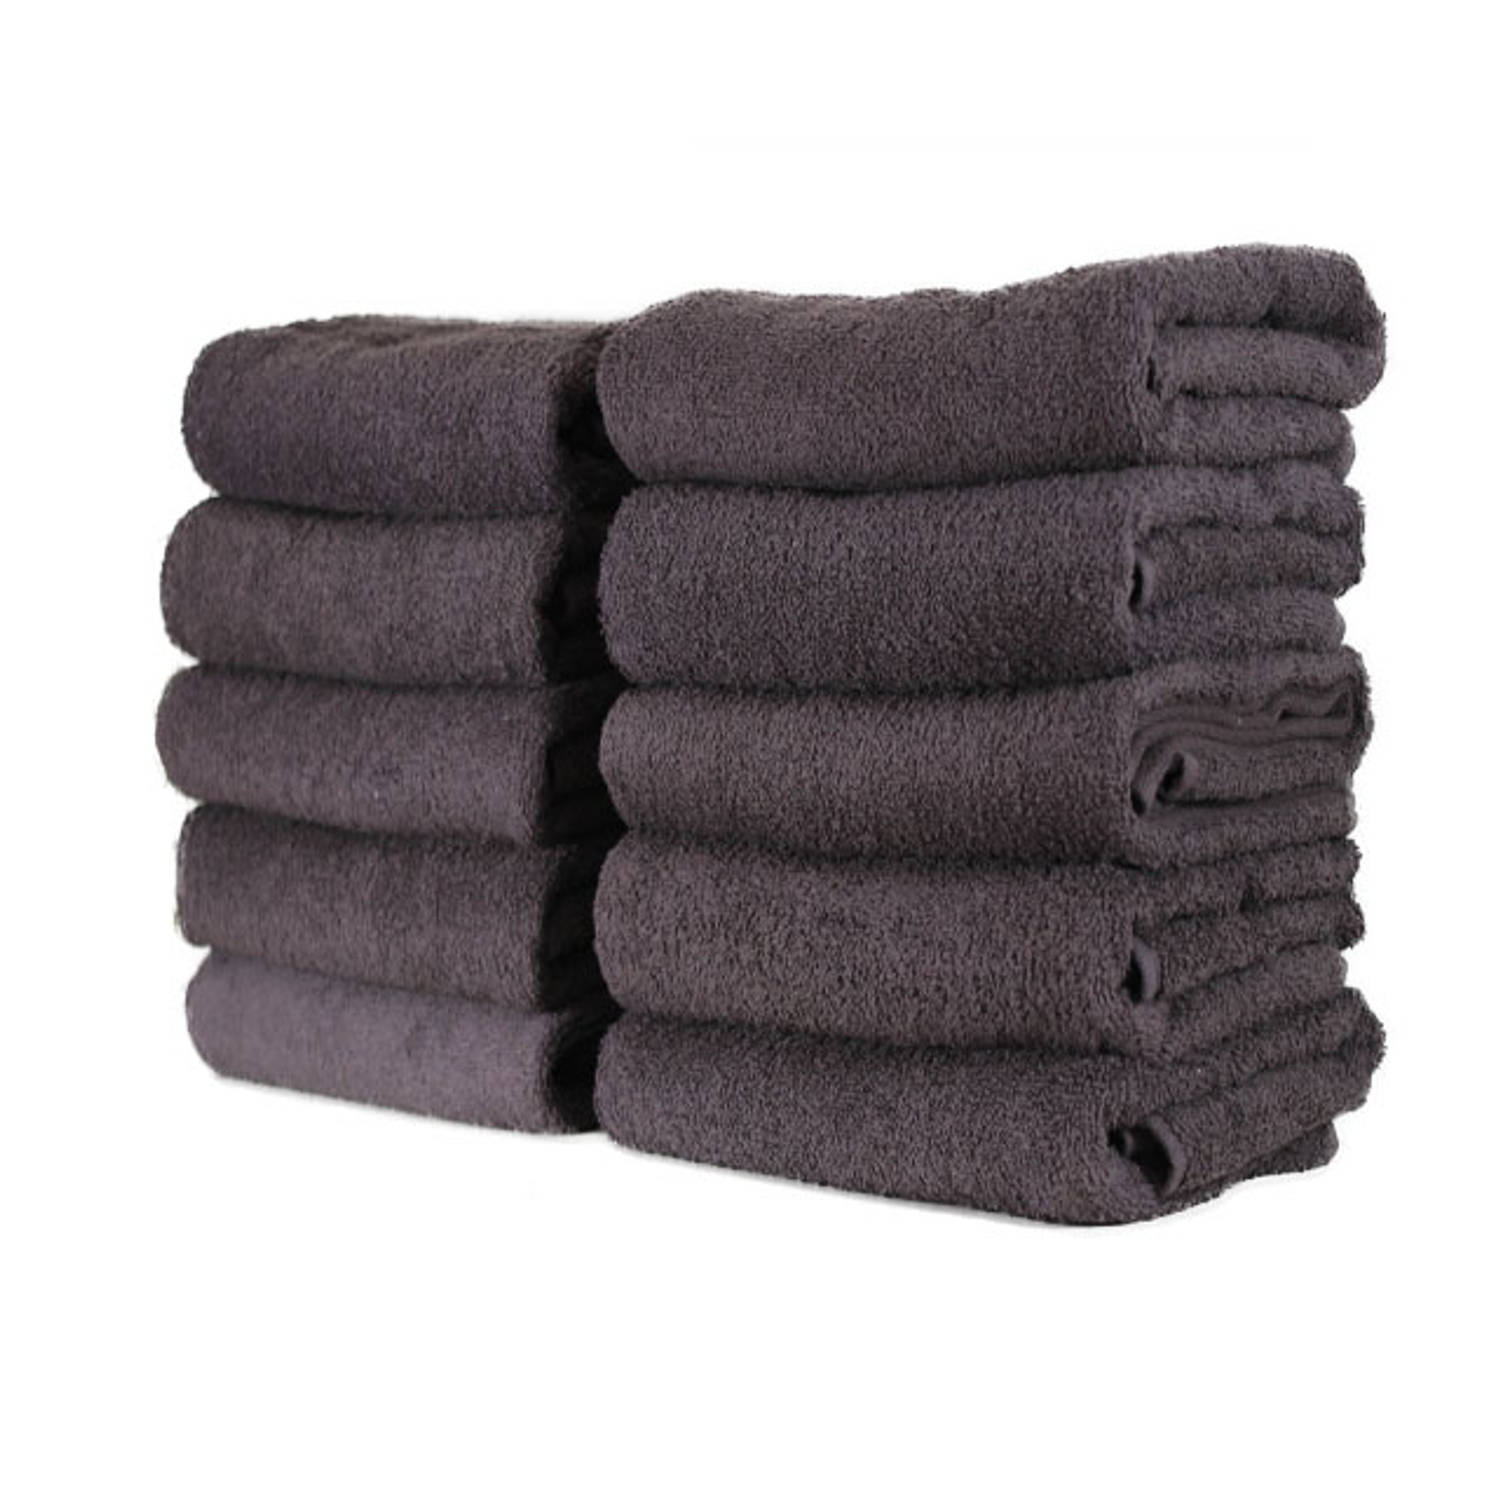 Hotel handdoek - set van 6 stuks - 50x100 cm - Antraciet Blokker